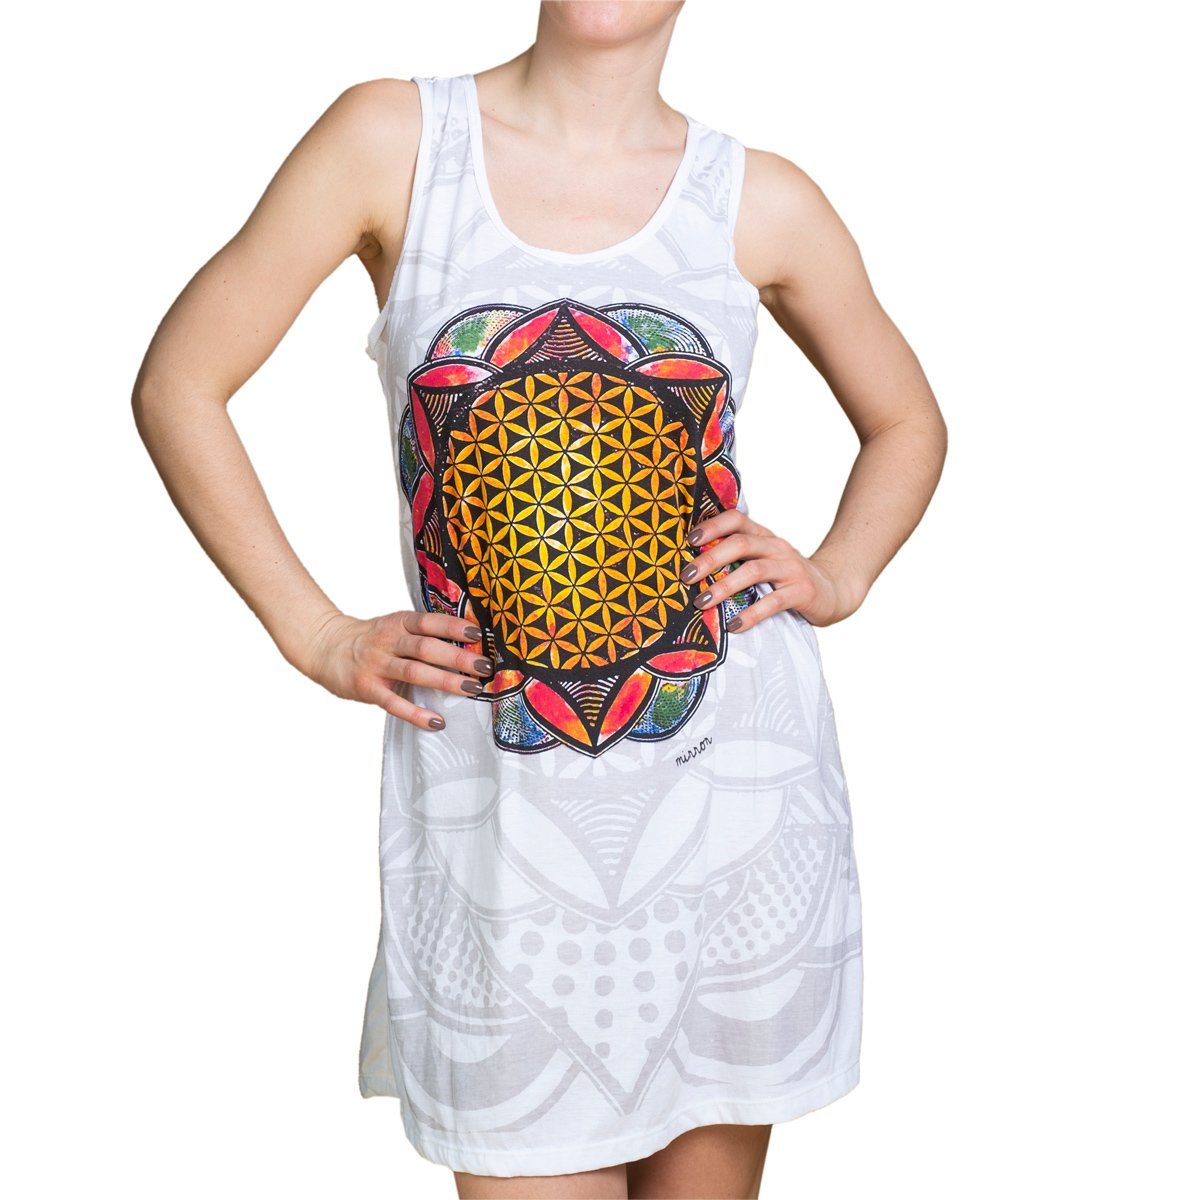 PANASIAM Tunikakleid Mirror Dress Lebensblume oder YinYang Shirtkleid auch als Longshirt Strandkleid oder Tunika zu tragen kurzes Sommerkleid Lebensblume weiß